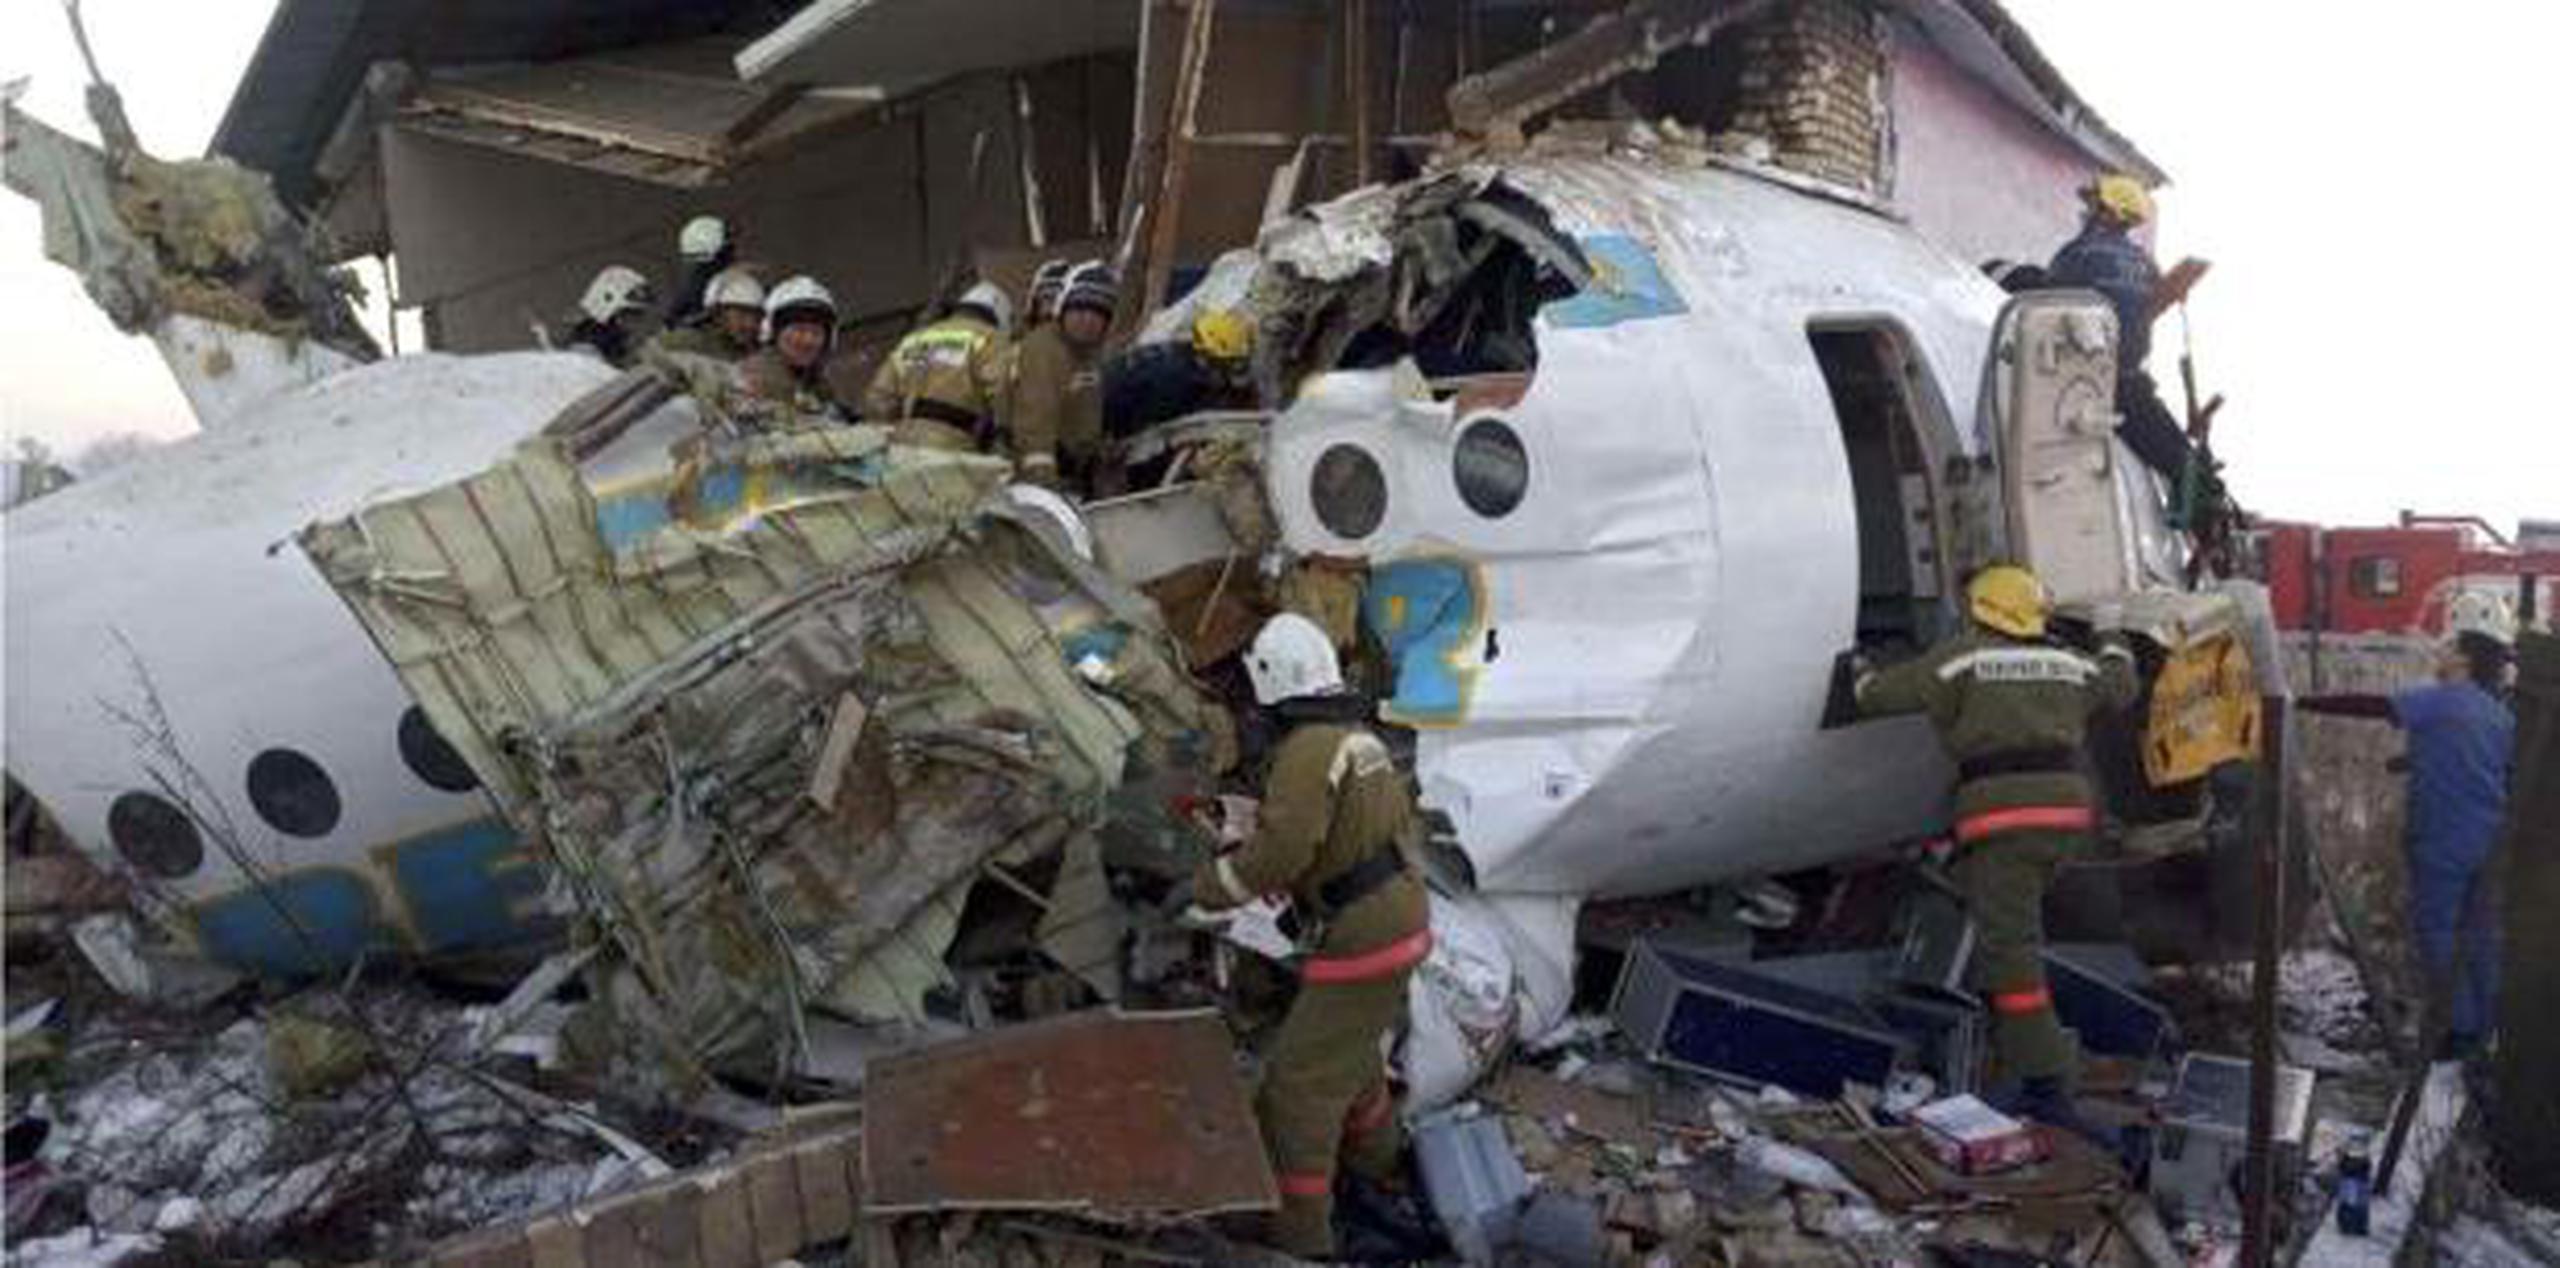 Policías y socorristas efectúan sus labores donde se estrelló el avión. (Ministerio de Situaciones de Emergencia de la República de Kazajistán vía AP)